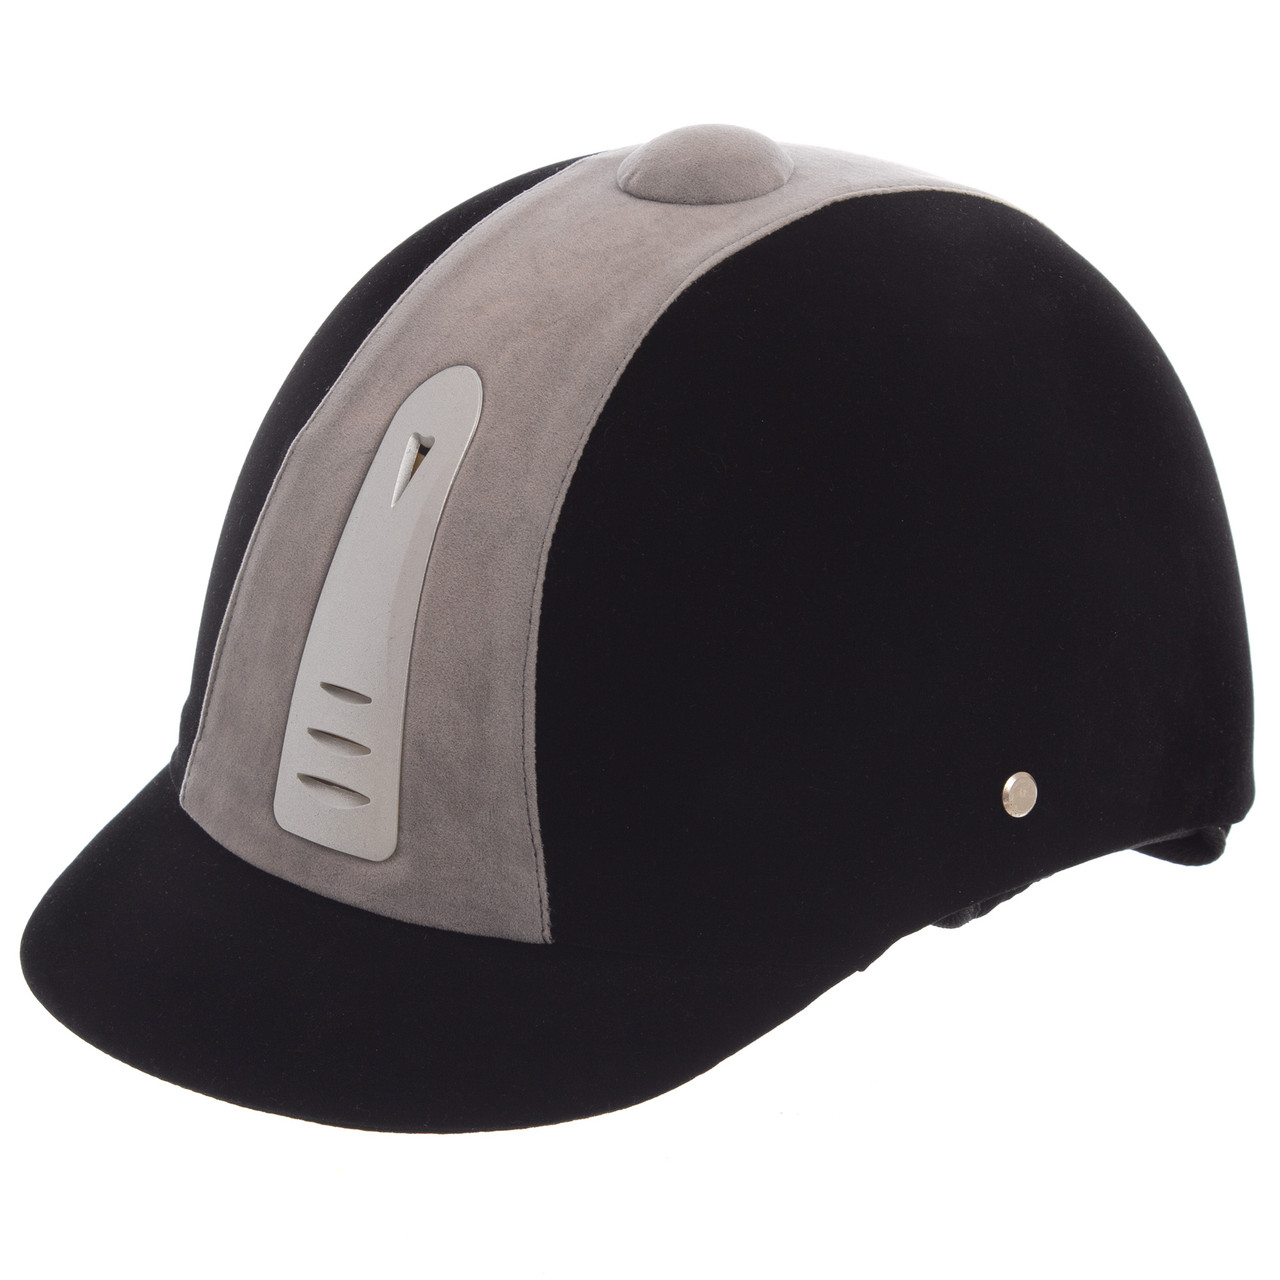 

Шлем для верховой езды BC-908-1 (ABS, р-р 54, черный-белый